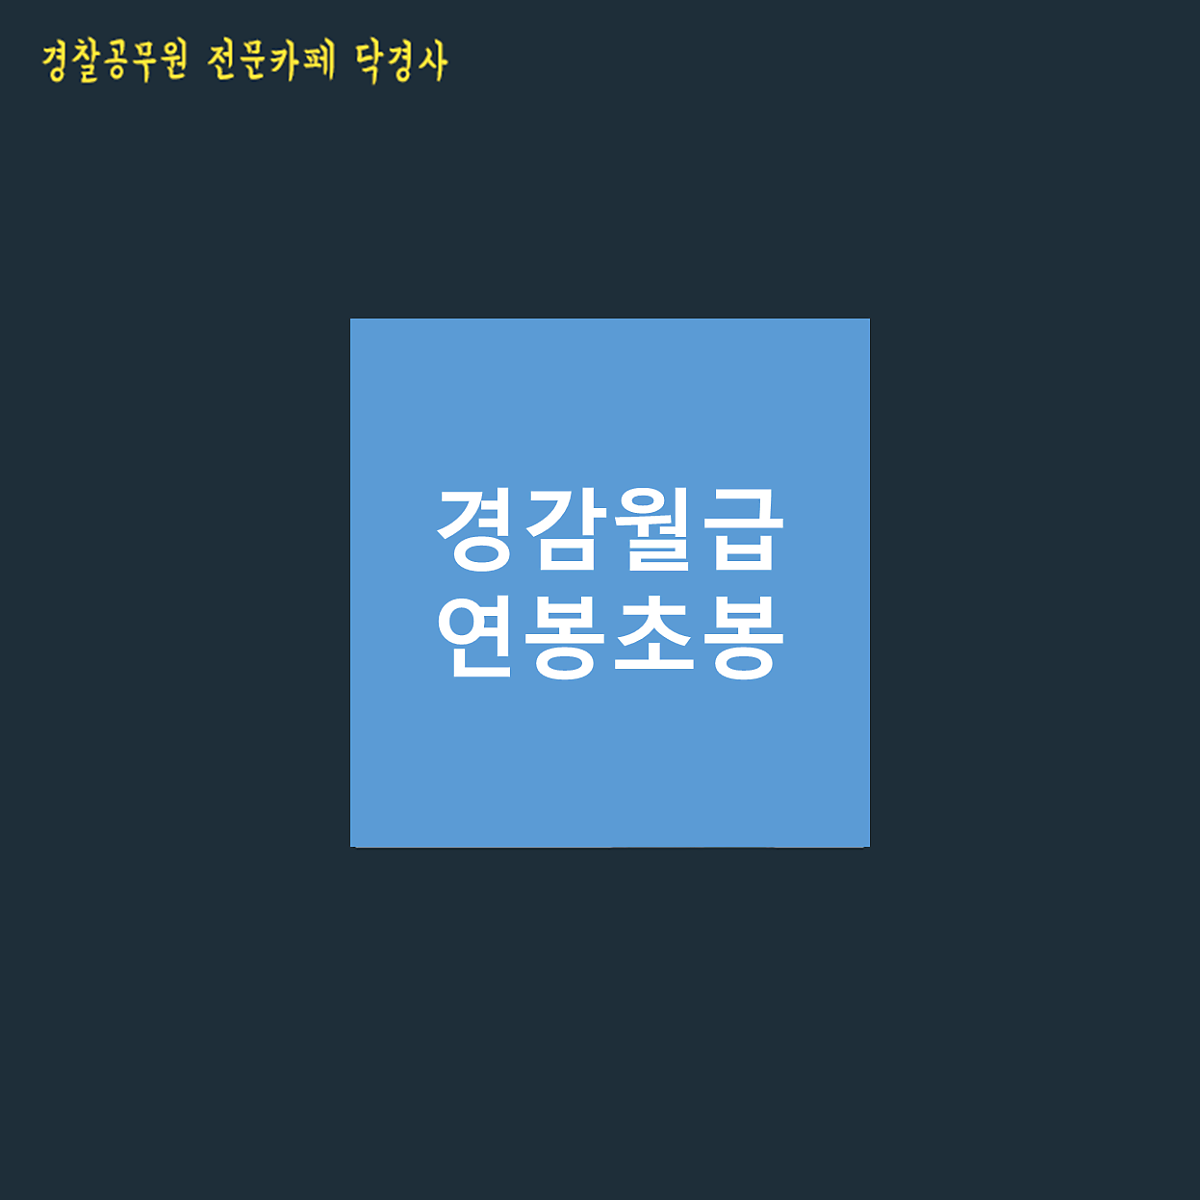 경감 월급 및 초봉 (Feat. 경찰공무원 계급표, 2021 인상 봉급표) : 네이버 포스트